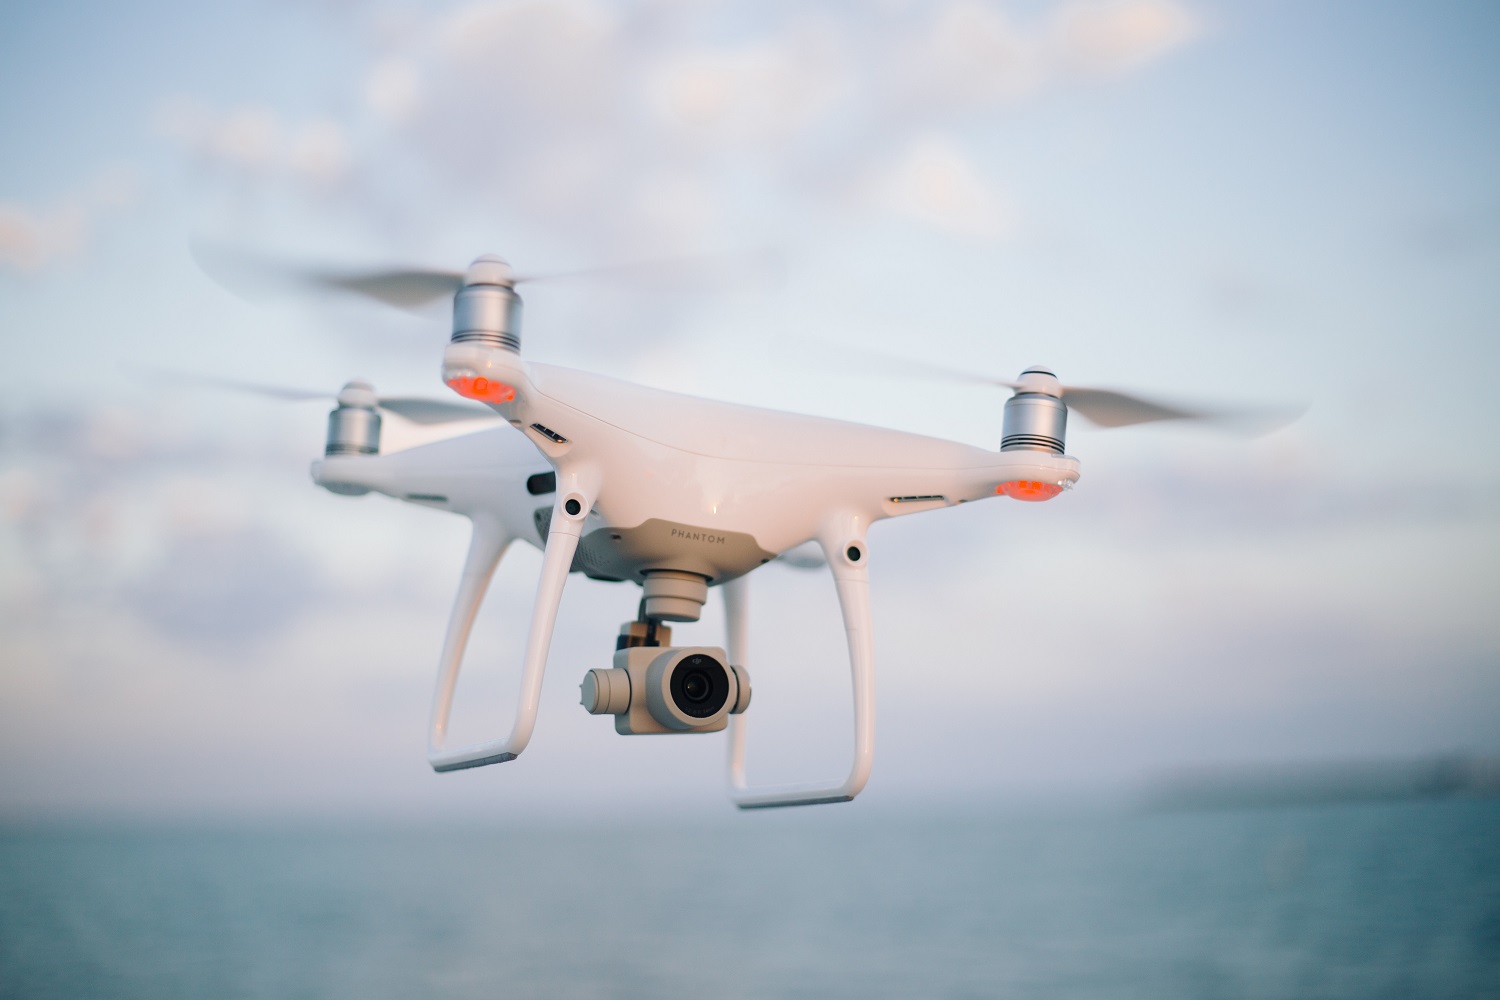 Leidimai skraidinti dronus bus suteikiami „vieno langelio“ principu